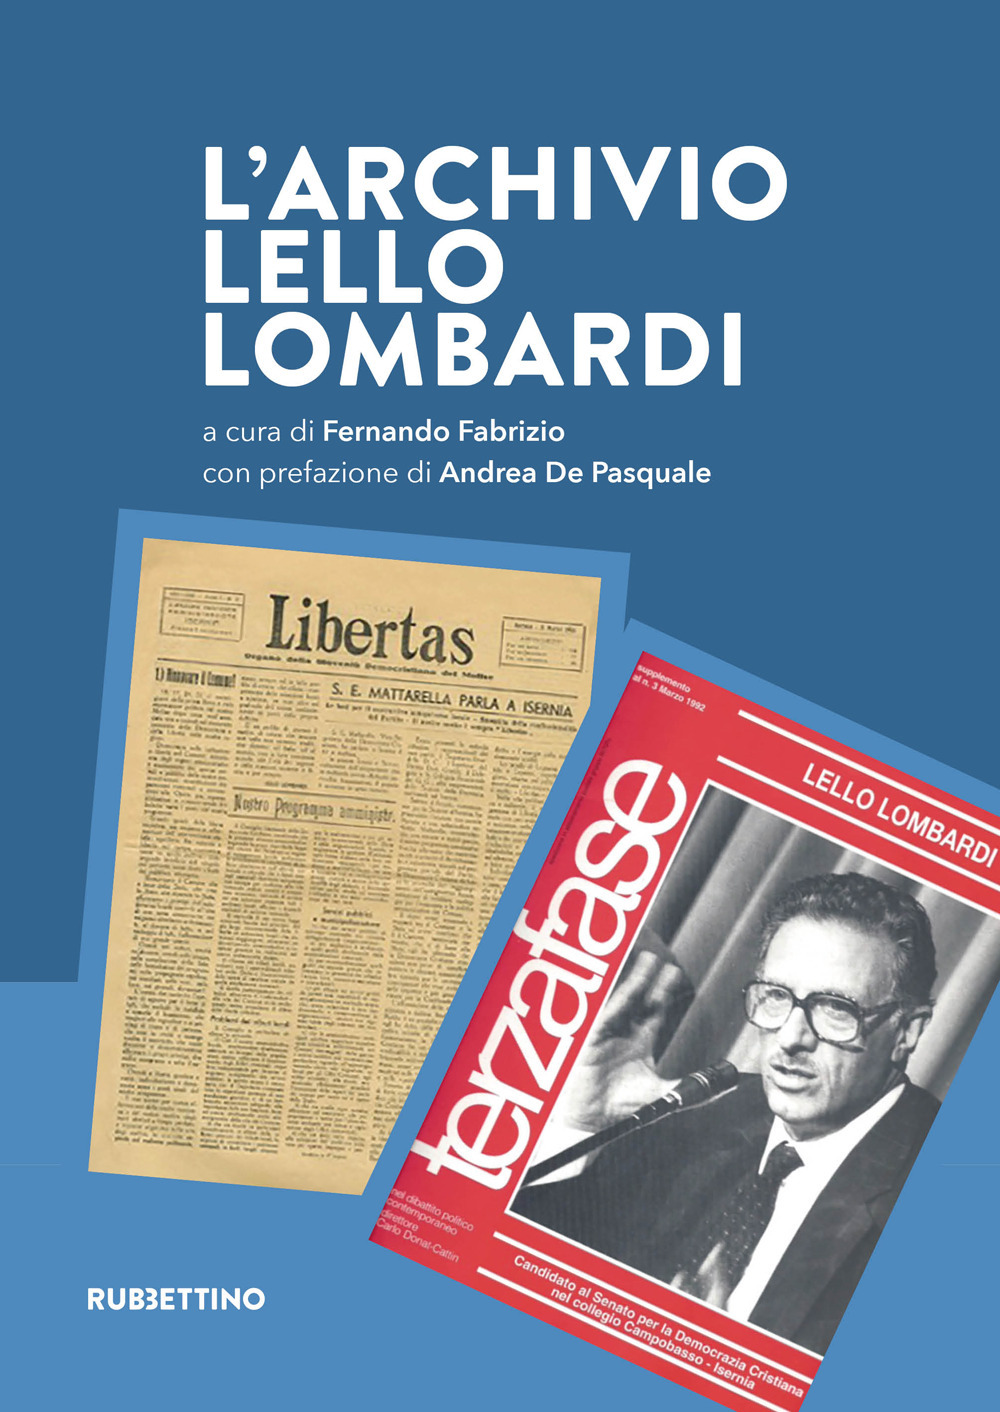 Libri Archivio Lello Lombardi (L') NUOVO SIGILLATO, EDIZIONE DEL 11/07/2022 SUBITO DISPONIBILE